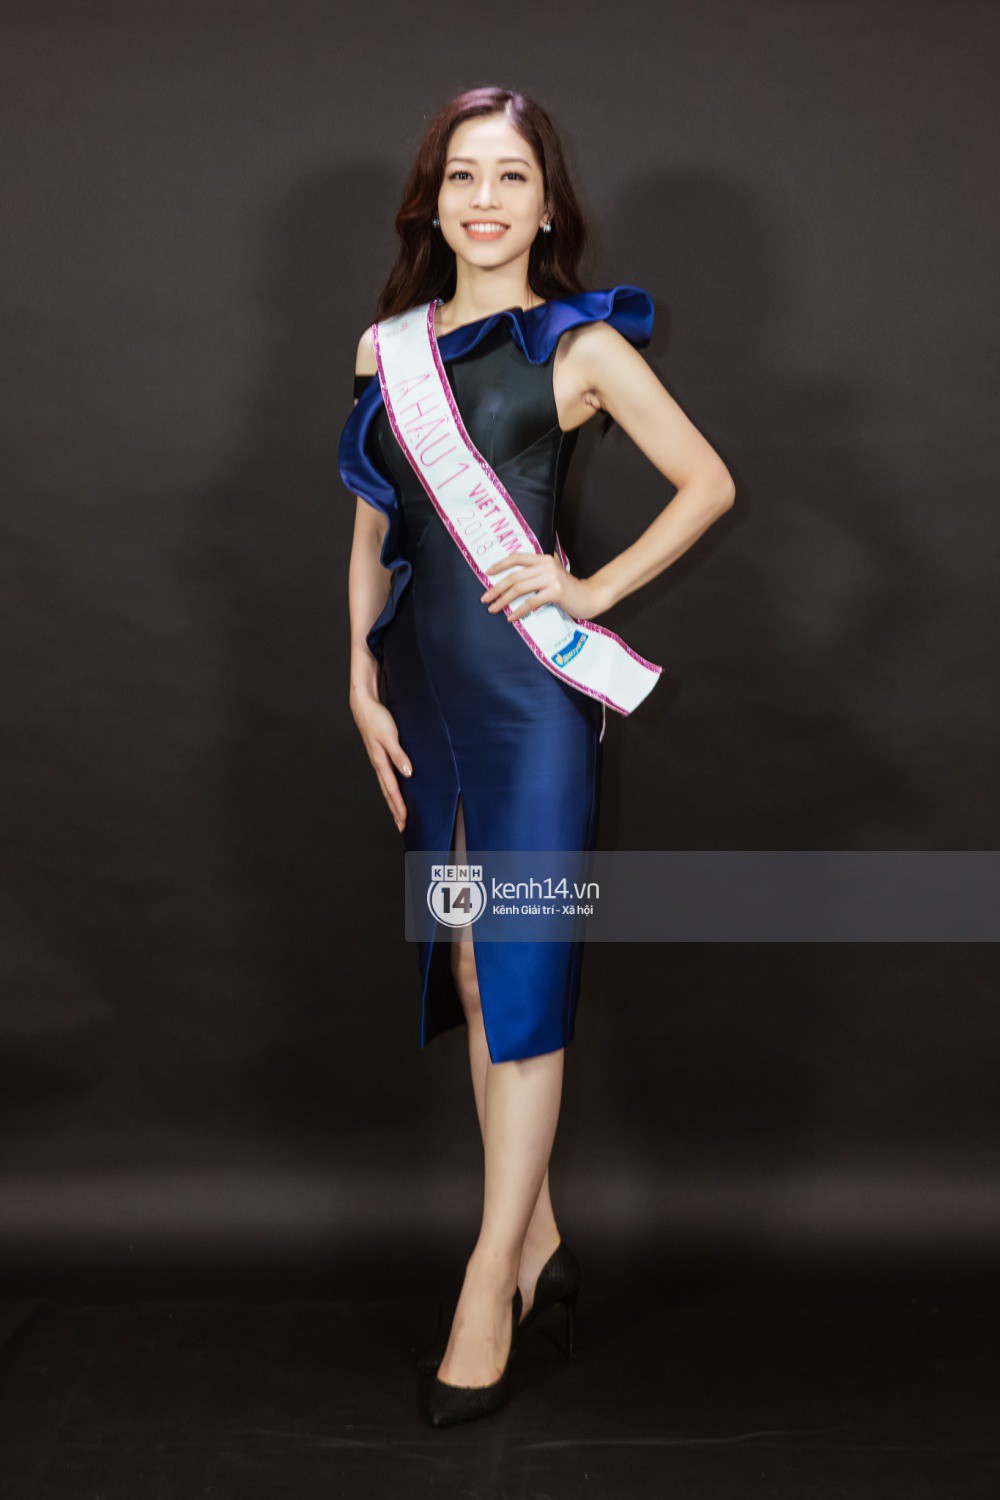 Ngắm cận vẻ đẹp của Top 3 Hoa hậu Việt Nam 2018: Mỹ nhân 2000 được khen sắc sảo, 2 nàng Á mười phân vẹn mười - Ảnh 8.